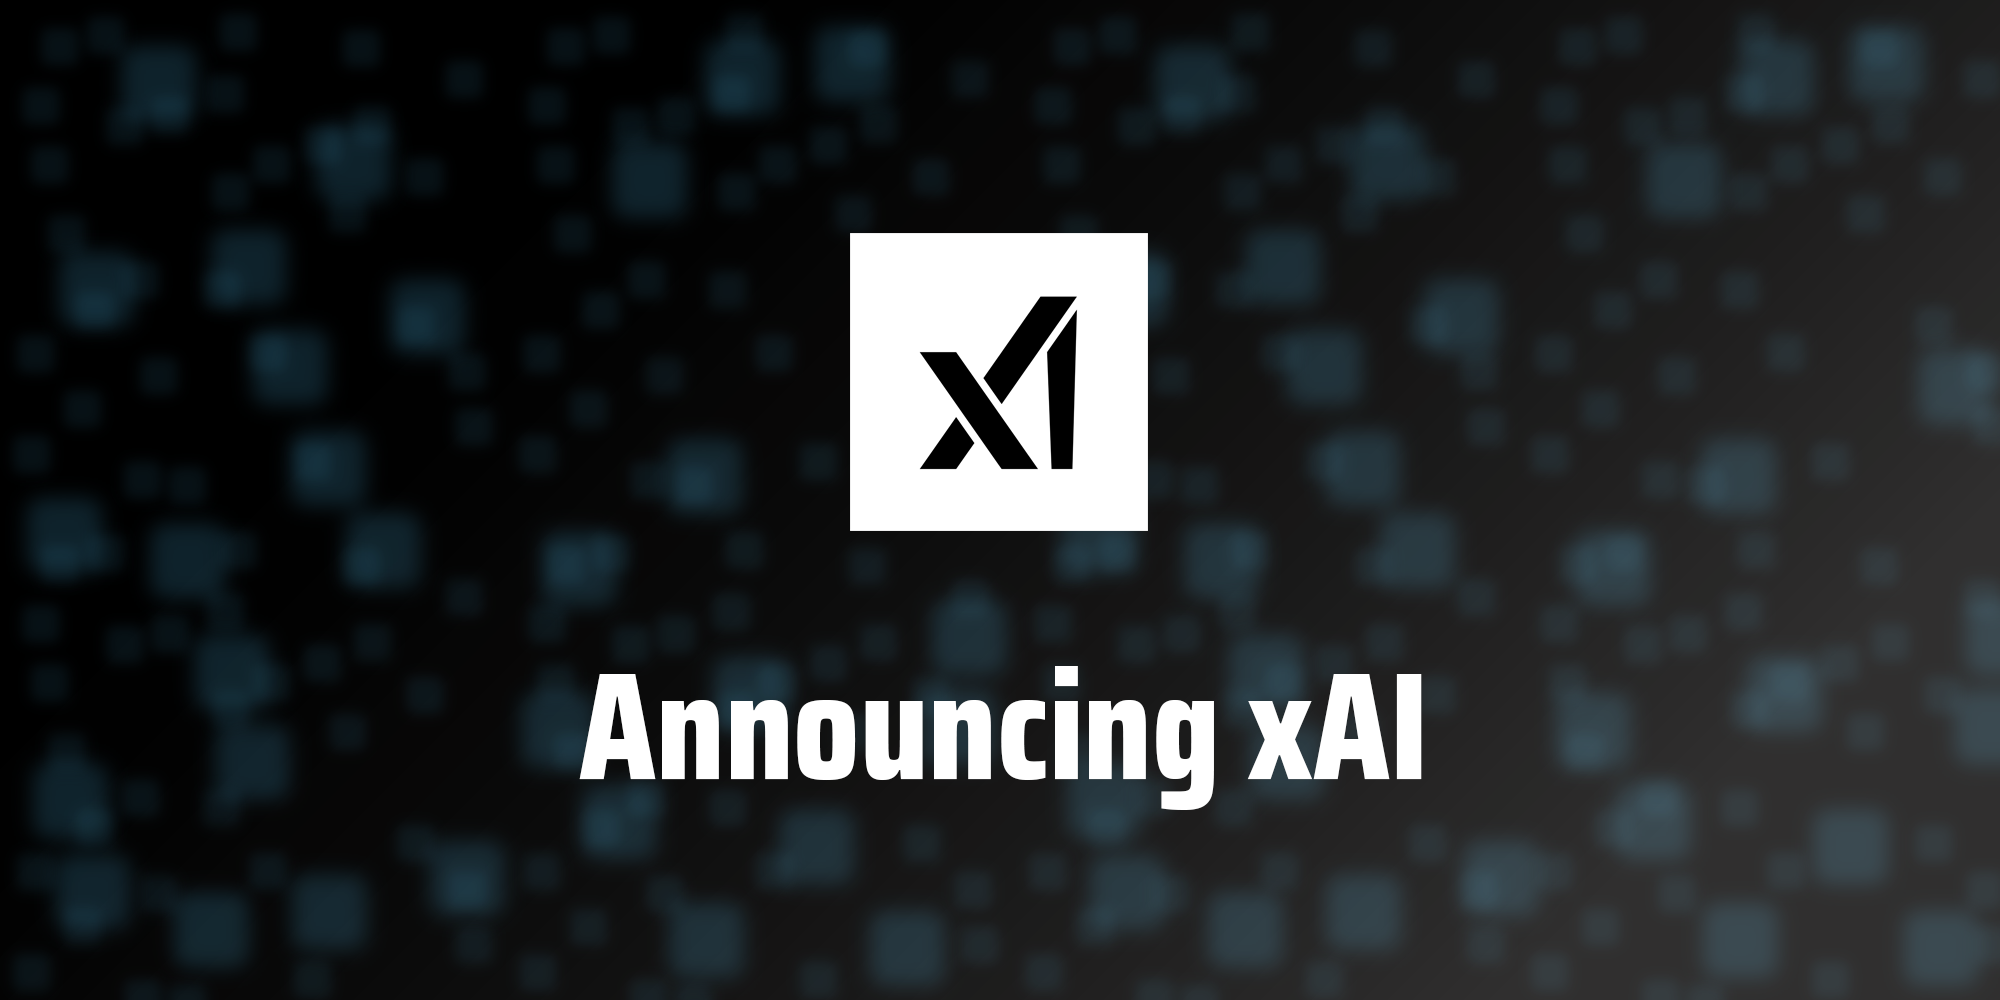 xAI випустить першу модель штучного інтелекту для "обраної групи" користувачів